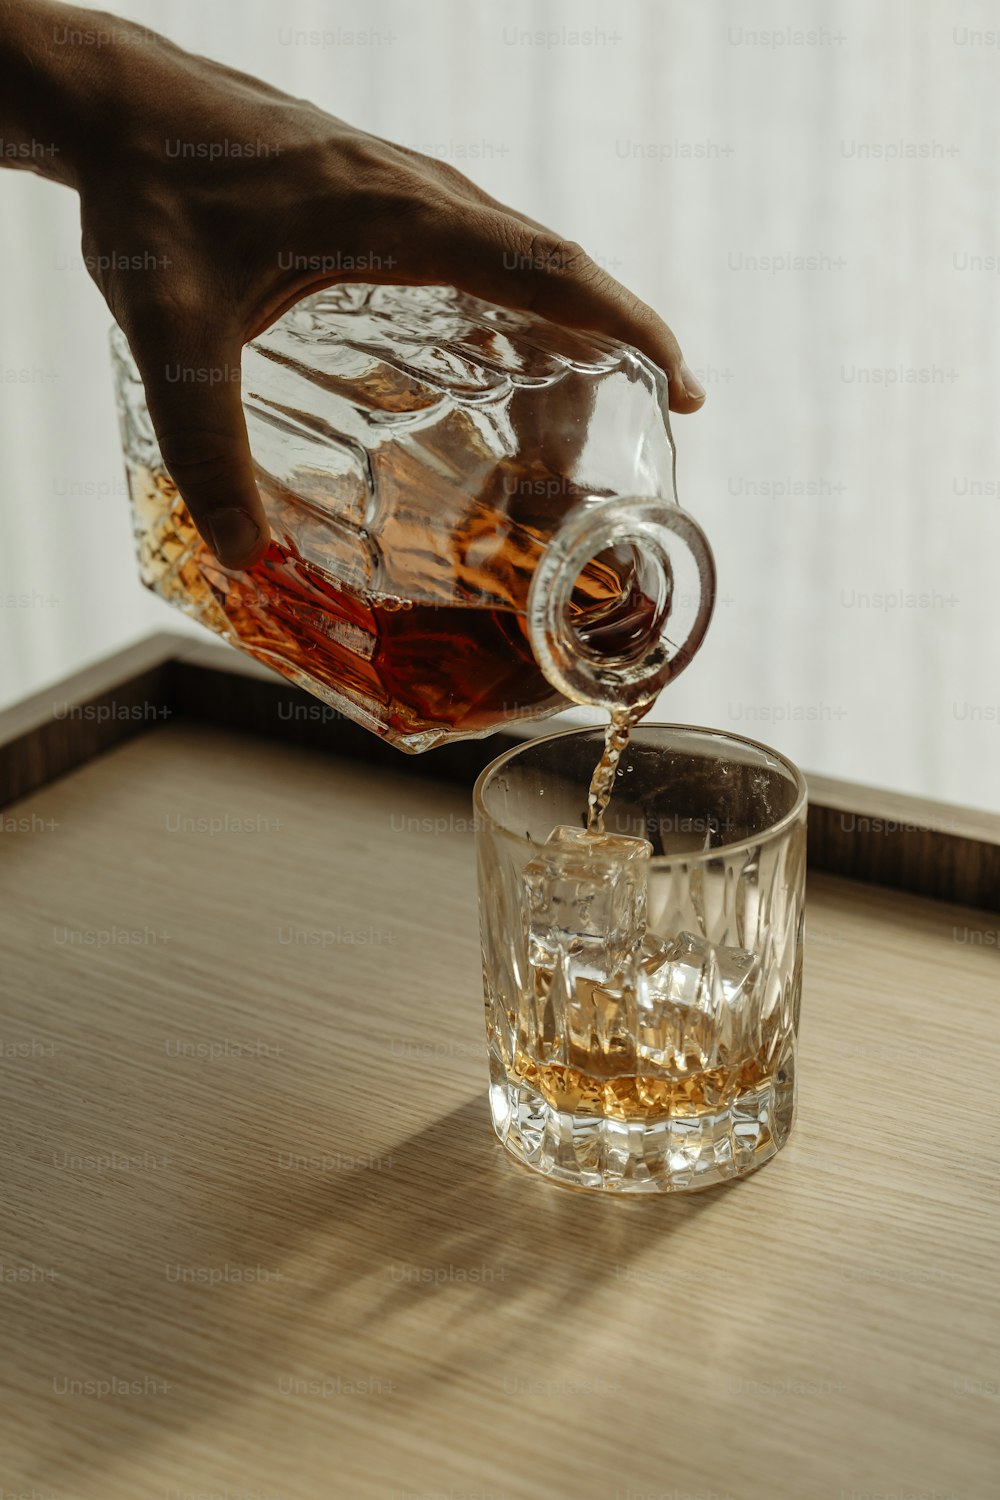 uma pessoa derramando uma bebida em um copo